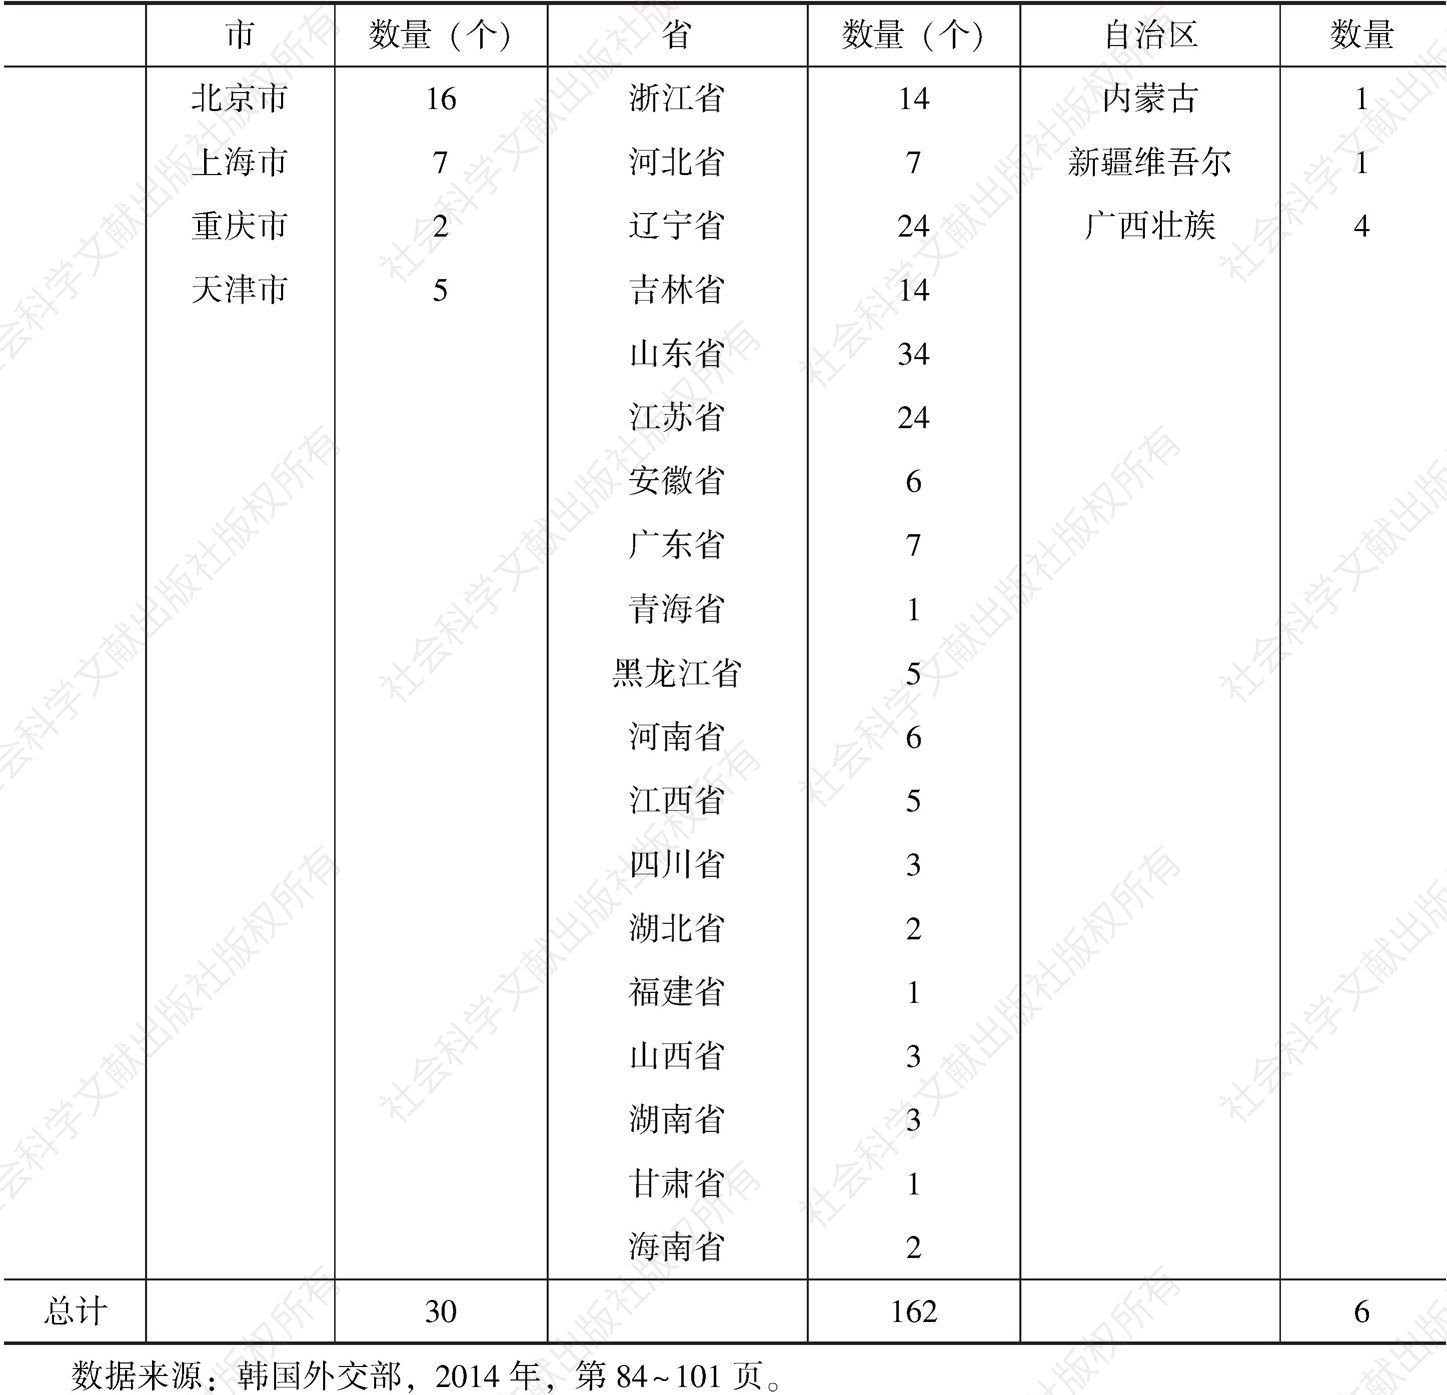 表3 2013年中国与韩国结成的友好城市（省、自治区、直辖市）数量